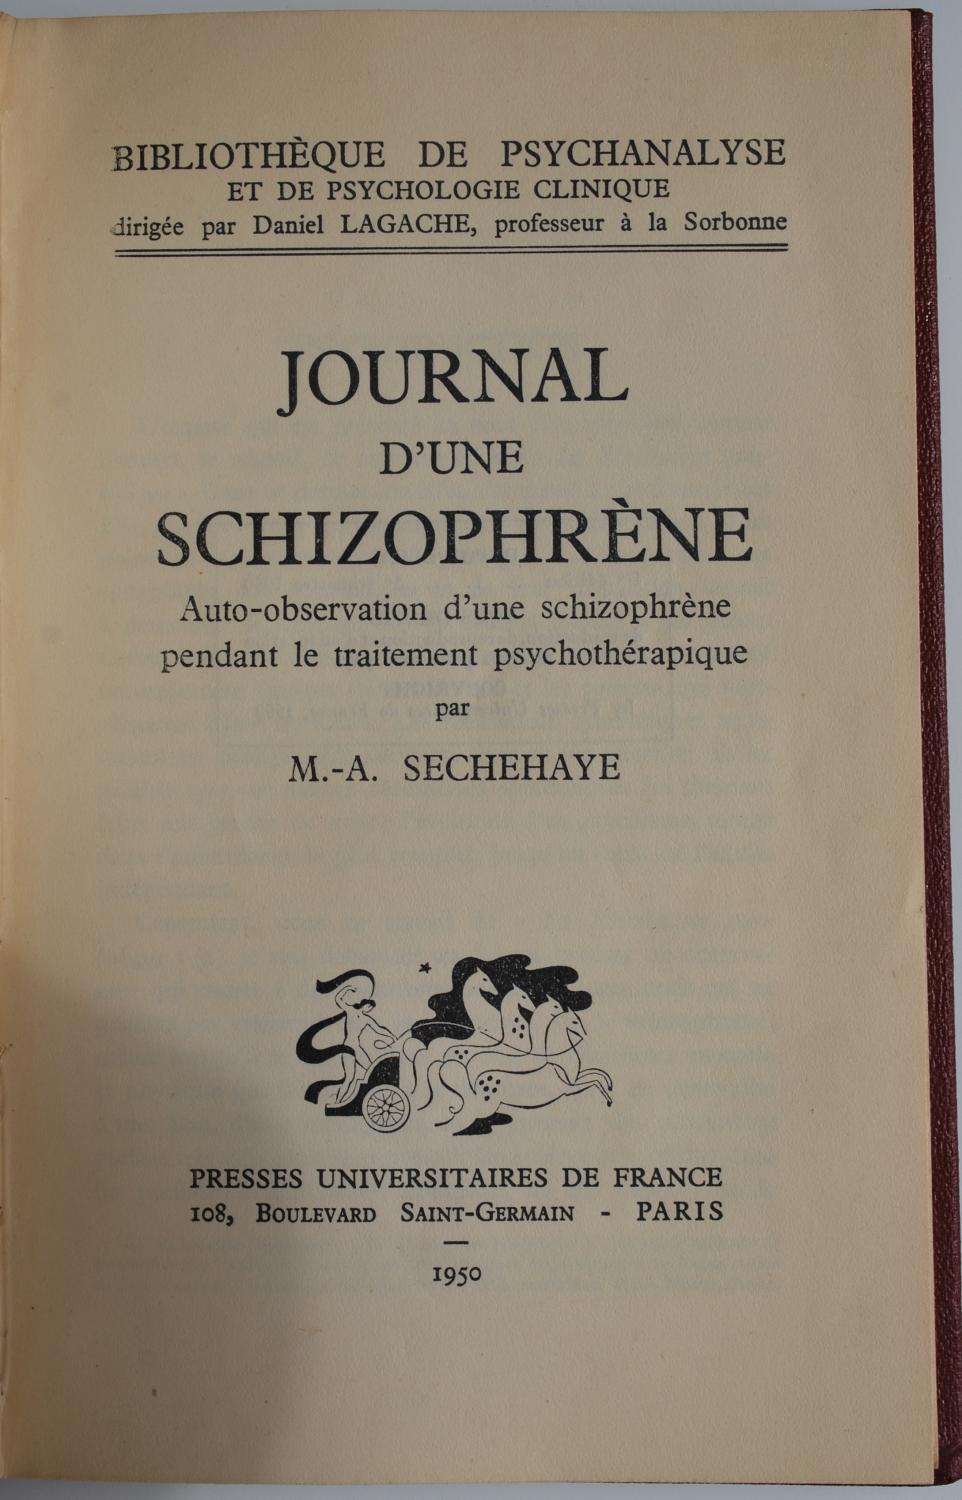 Journal d'une schizophrène Auto-observation d'une schizophrène pendant le traitement psychothérapique 